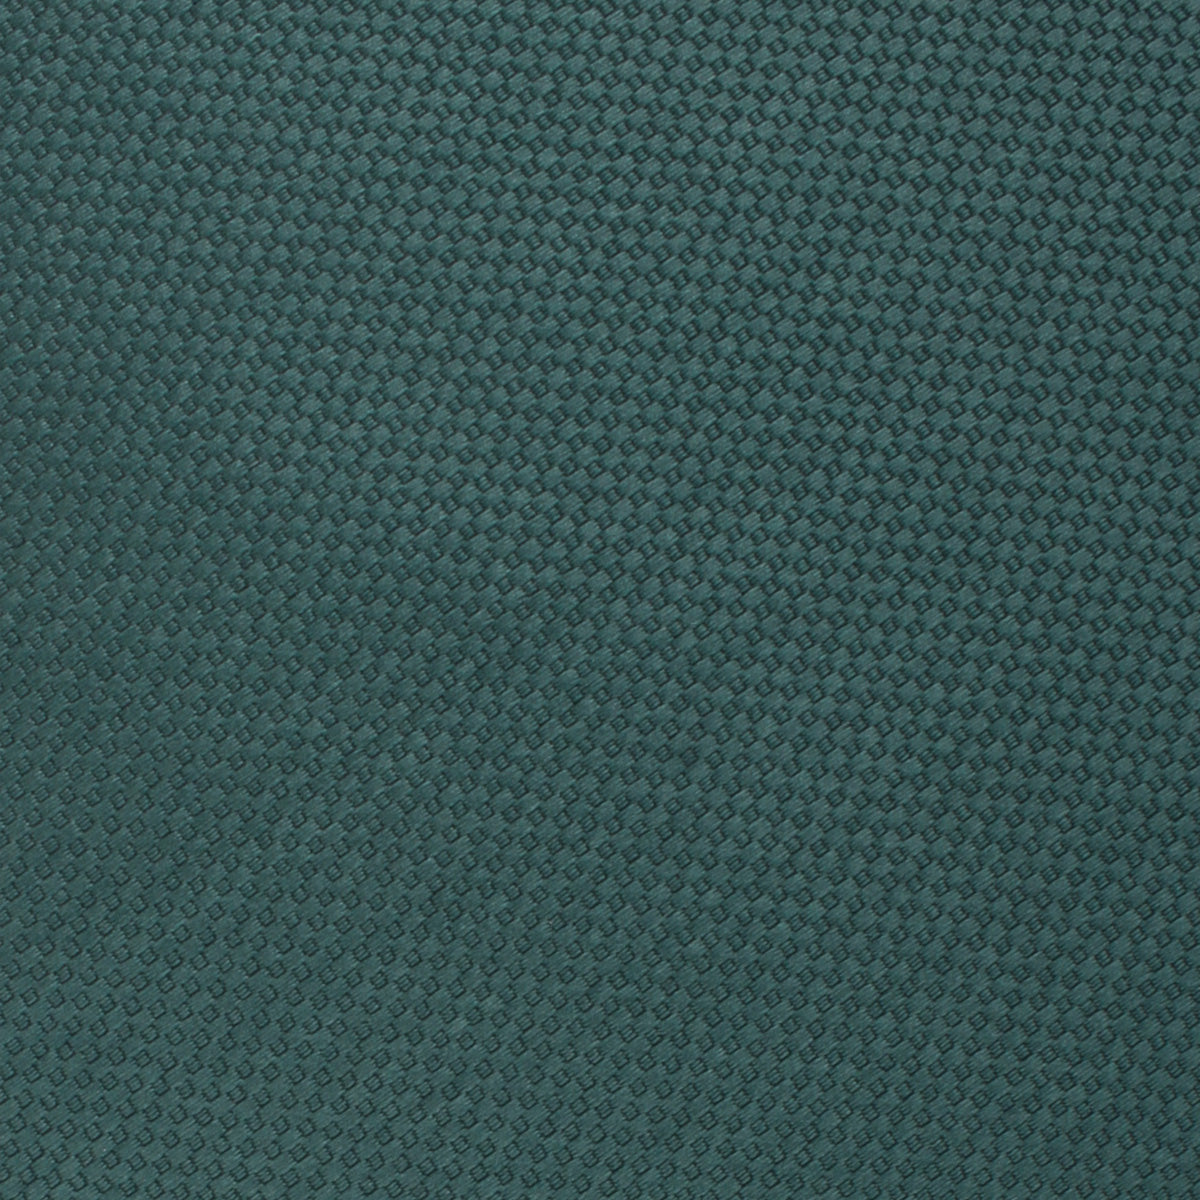 Dark Green Basket Weave Fabric Swatch